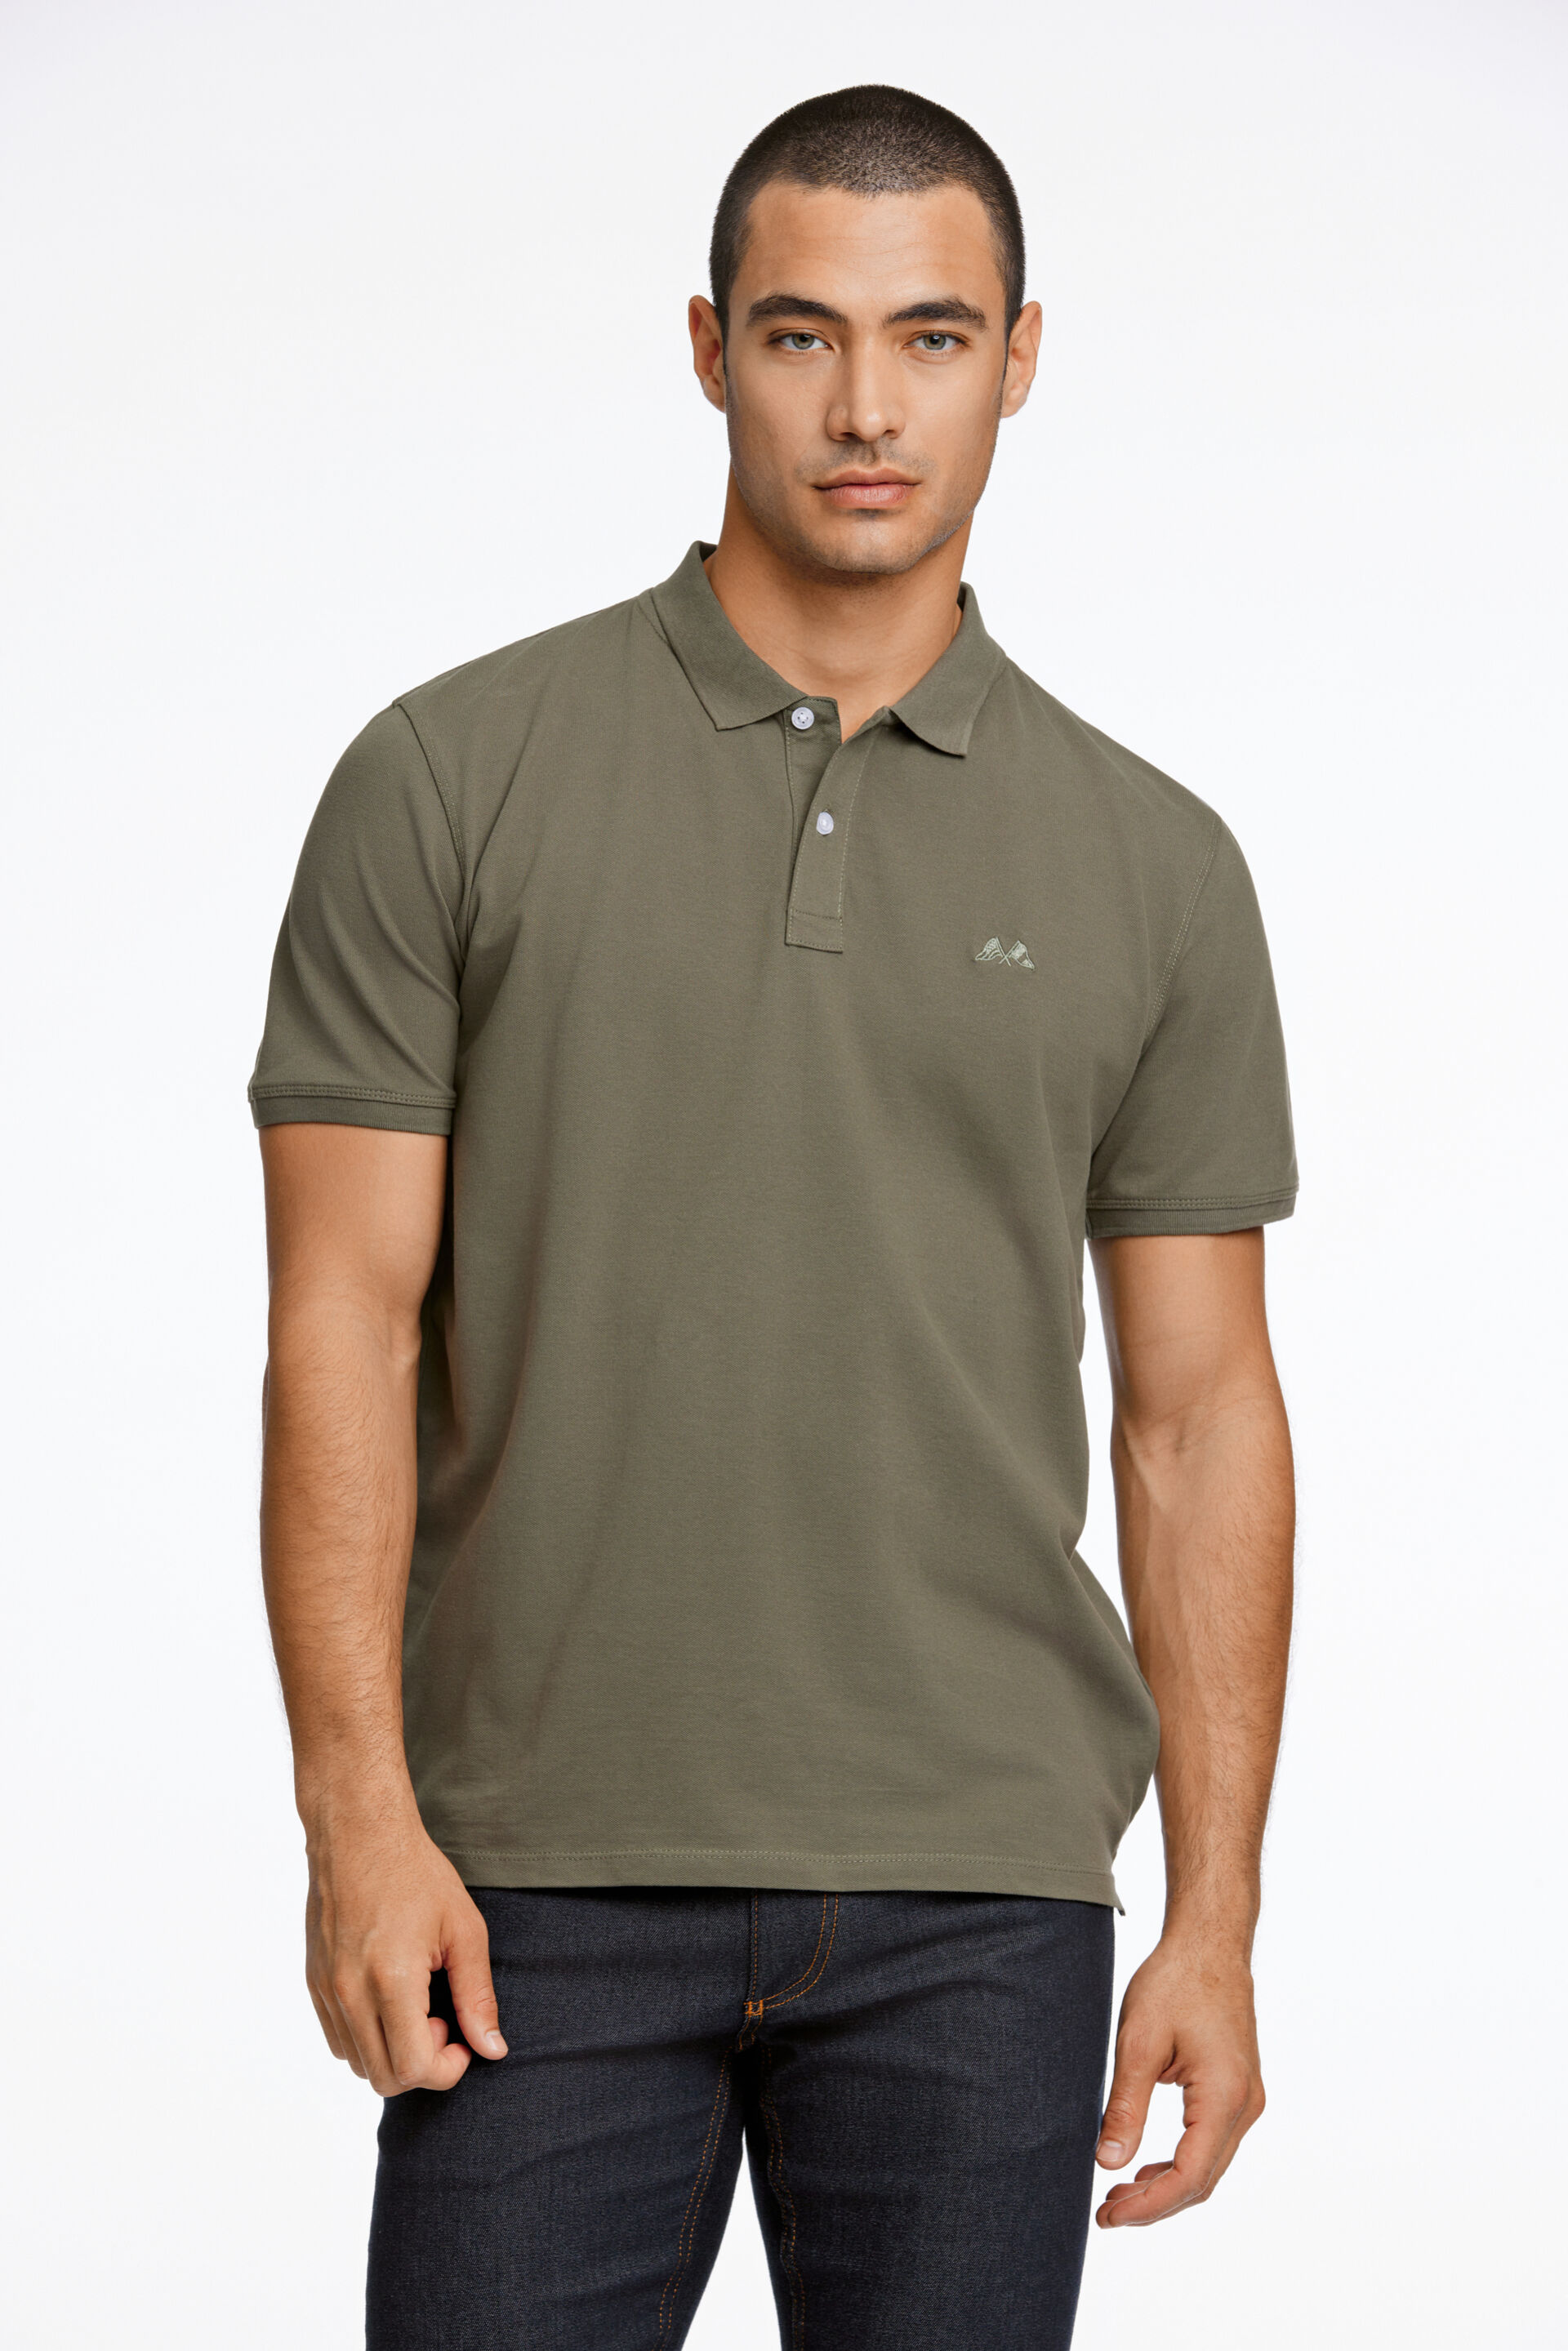 Polo shirt Polo shirt Green 30-404016